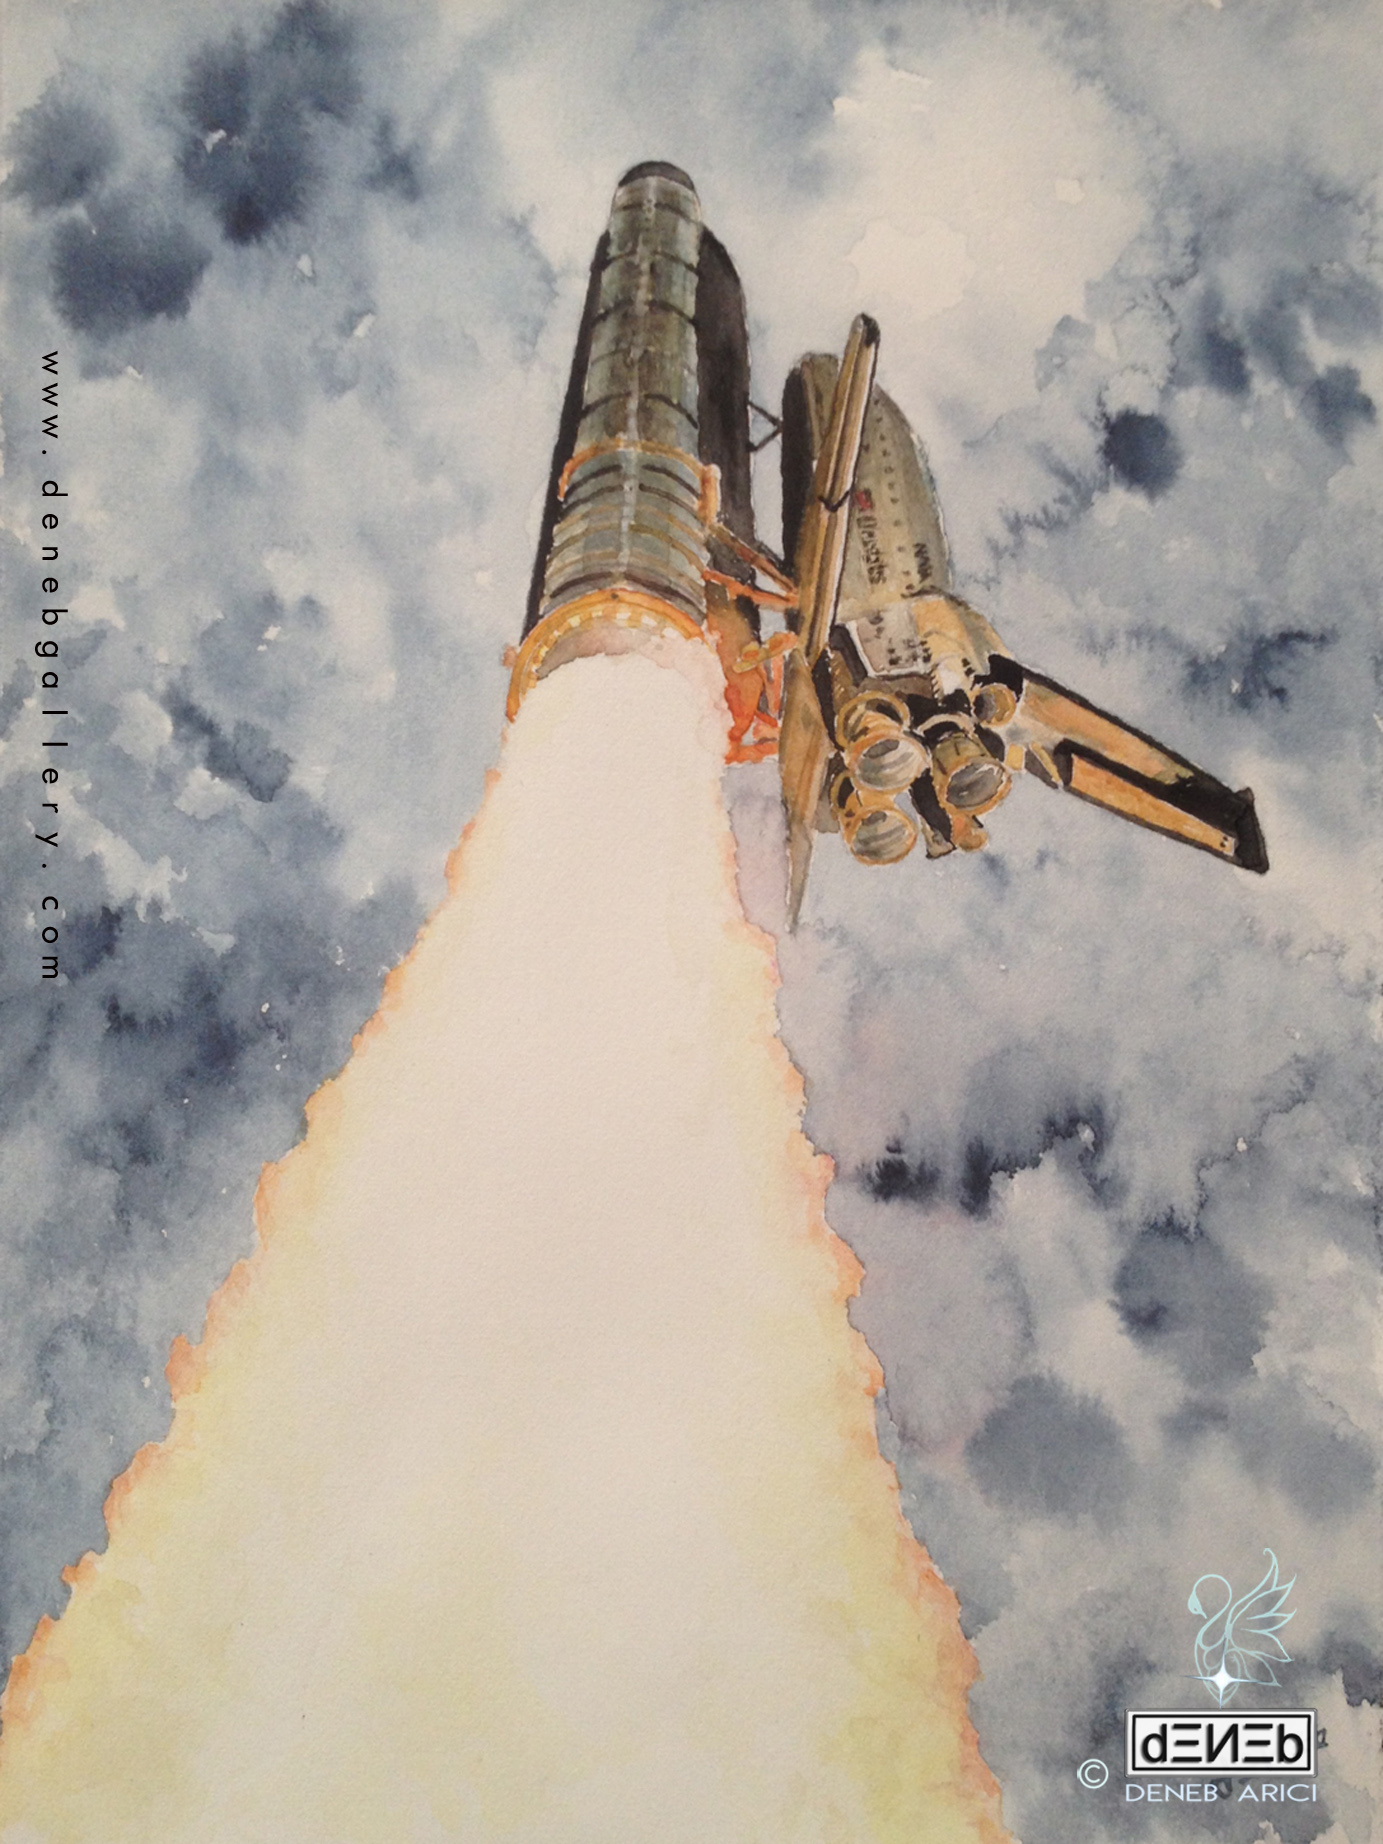 Pillar of fire - Space Shuttle